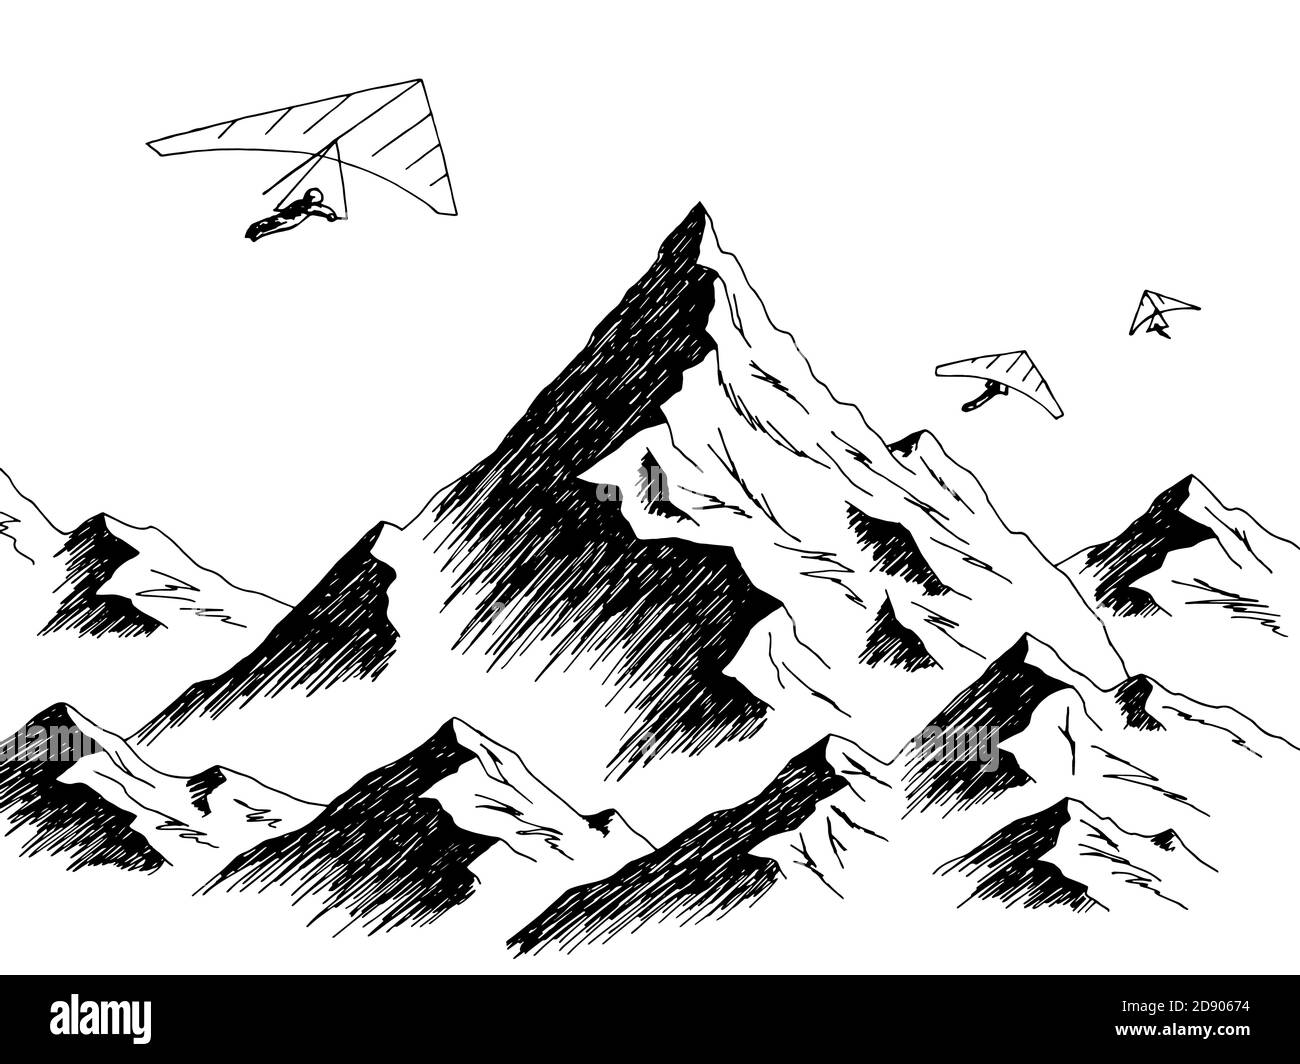 Hängegleiter fliegen in den Bergen Grafik schwarz weiß Landschaft Vektor der Skizzendarstellung Stock Vektor